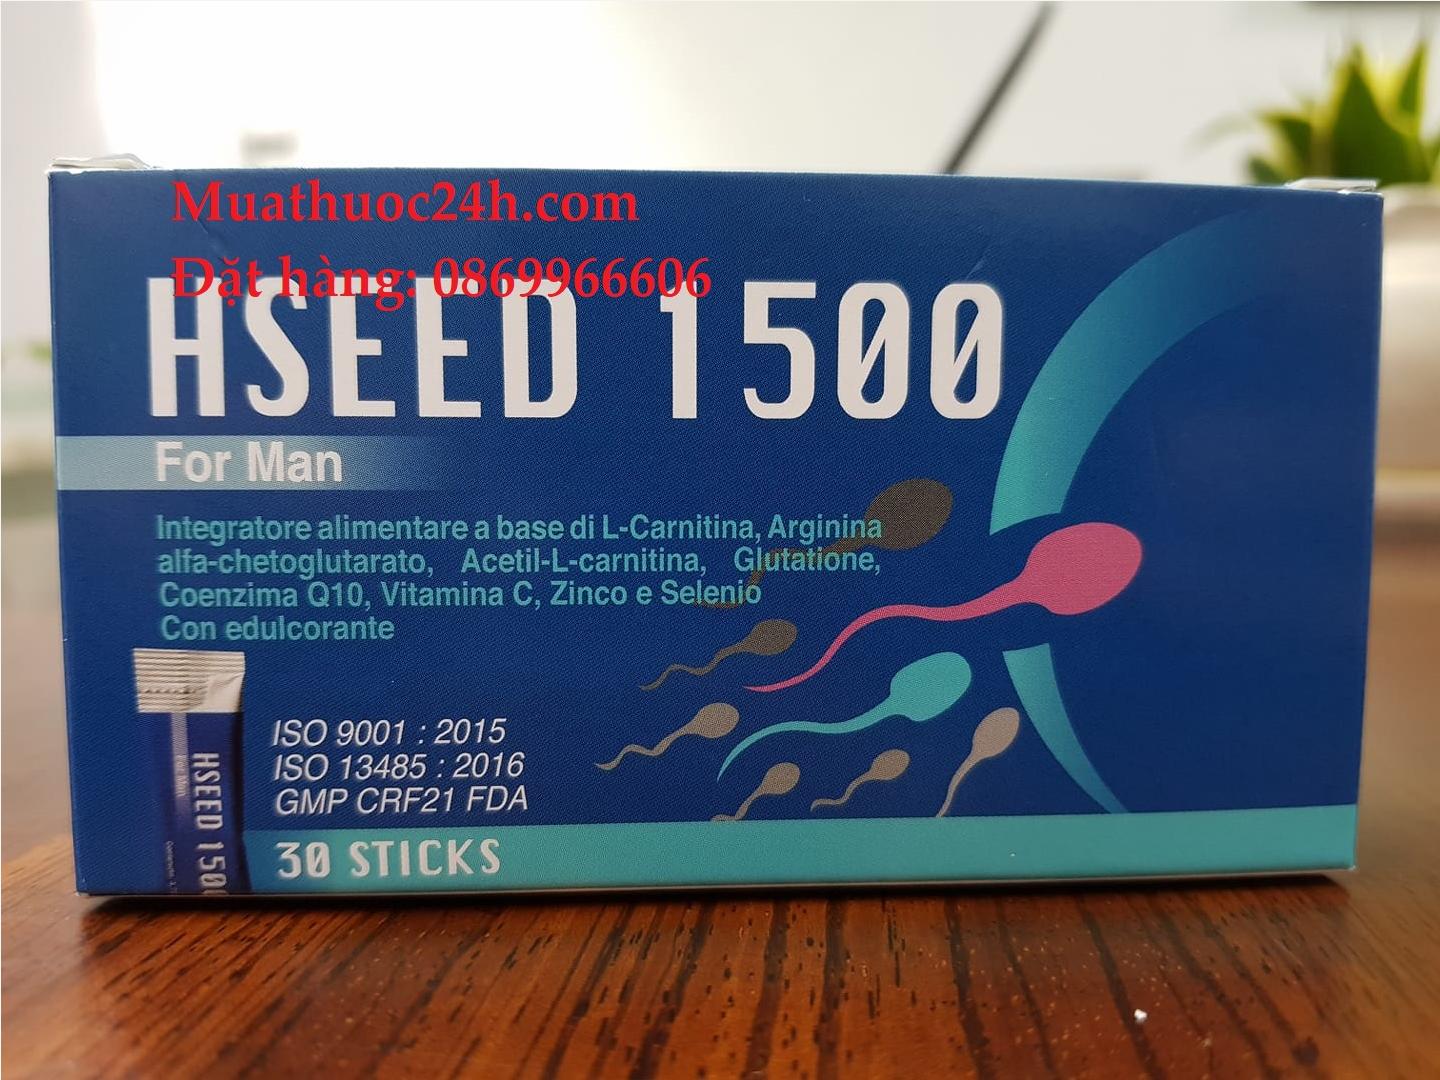 Thuốc Hseed 1500 giá bao nhiêu mua ở đâu?